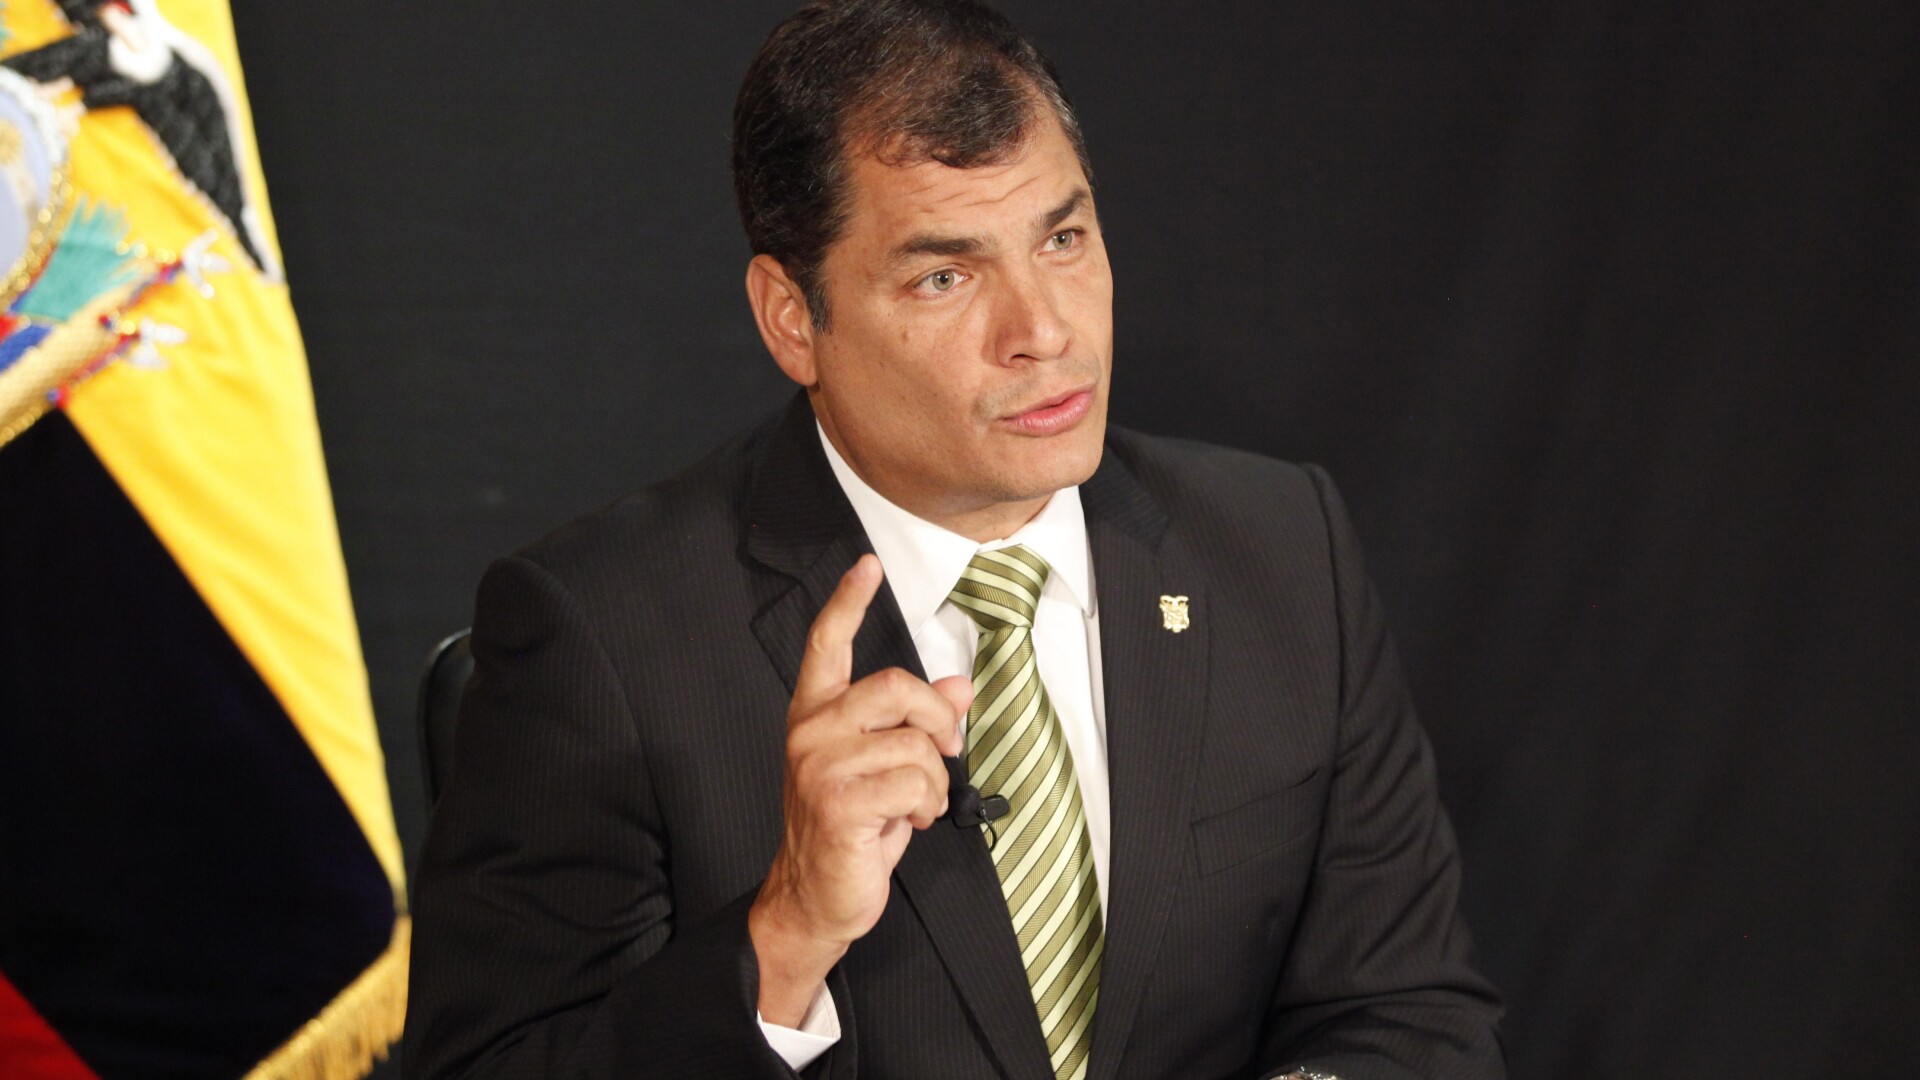 Presedintele Ecuadorului, Rafael Correa